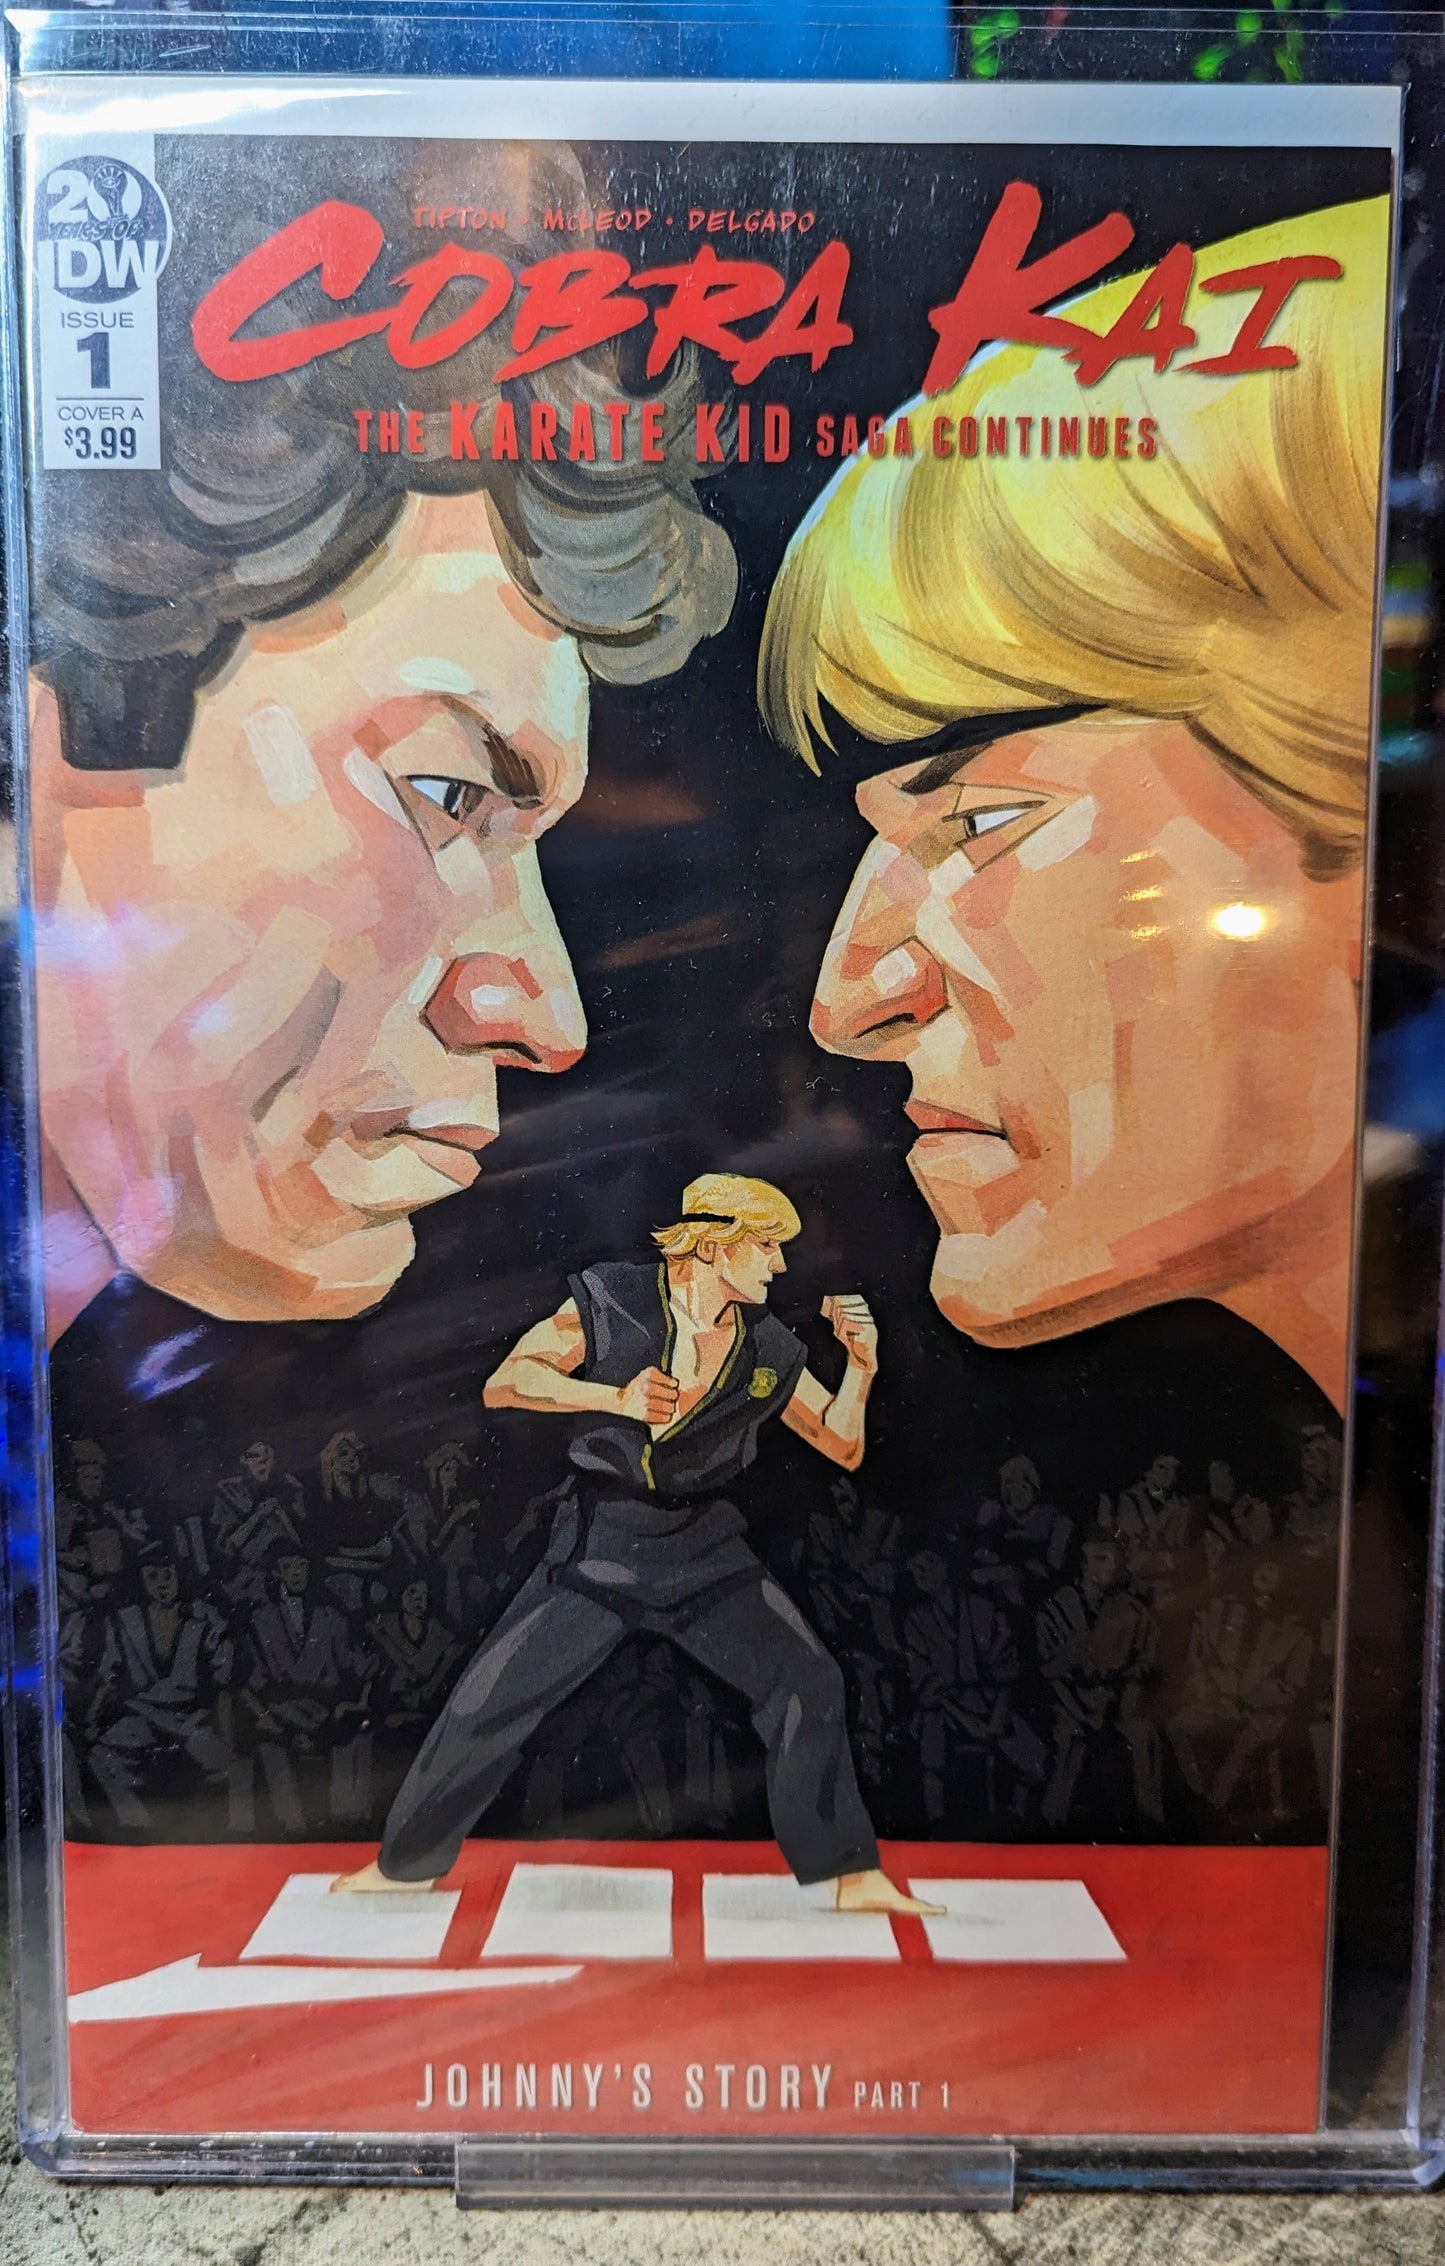 Cobra Kai: The Karate Kid Saga Continues

#1A